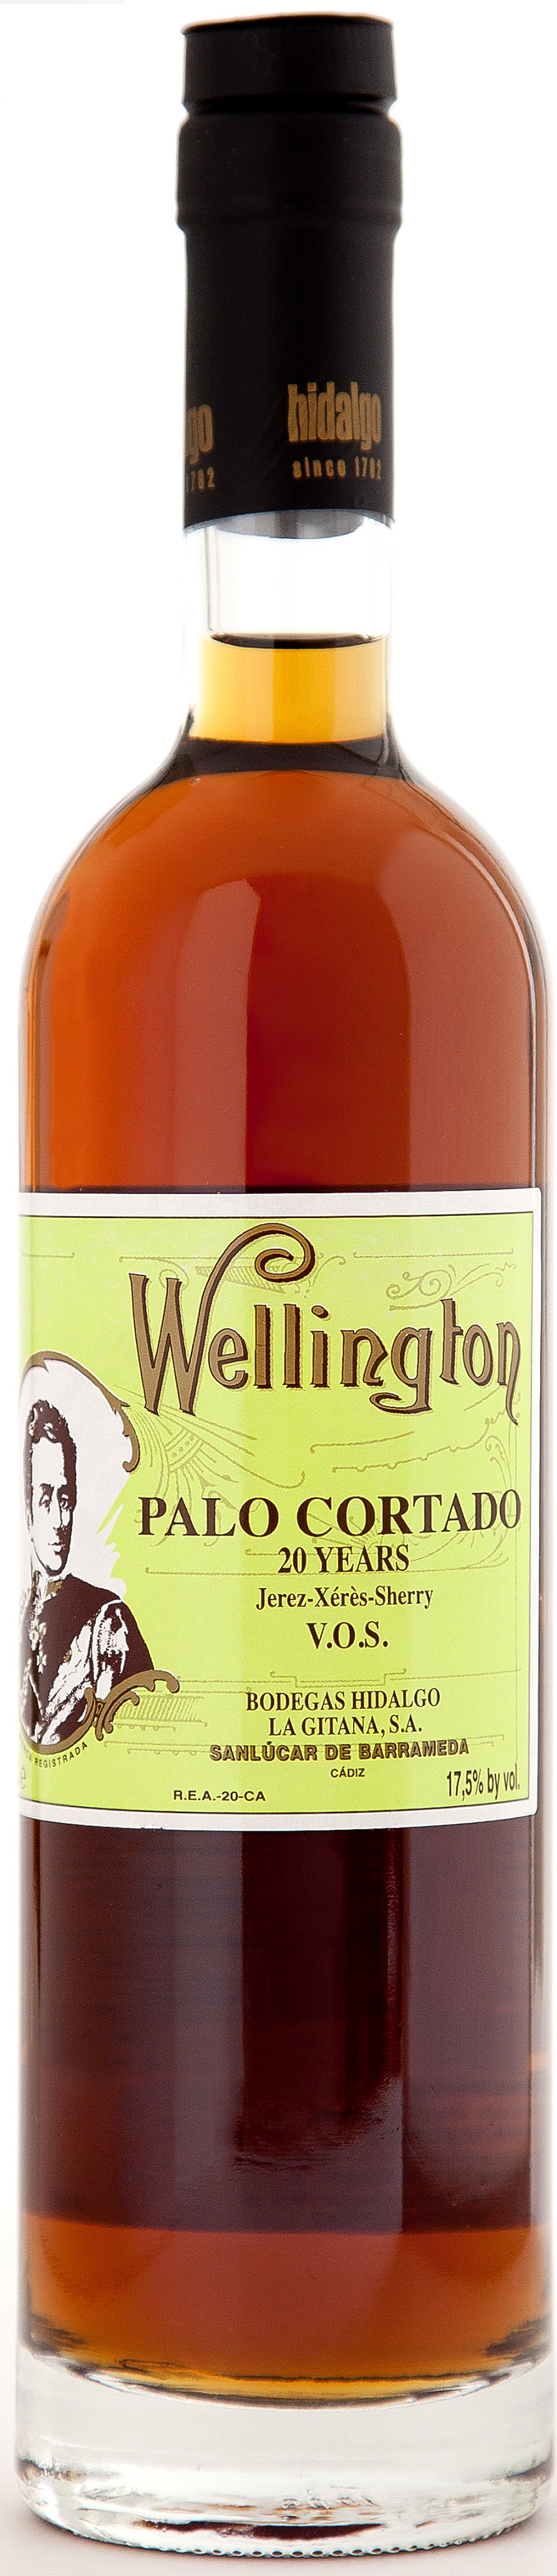 Imagen de la botella de Vino Palo Cortado Wellington V.O.S.